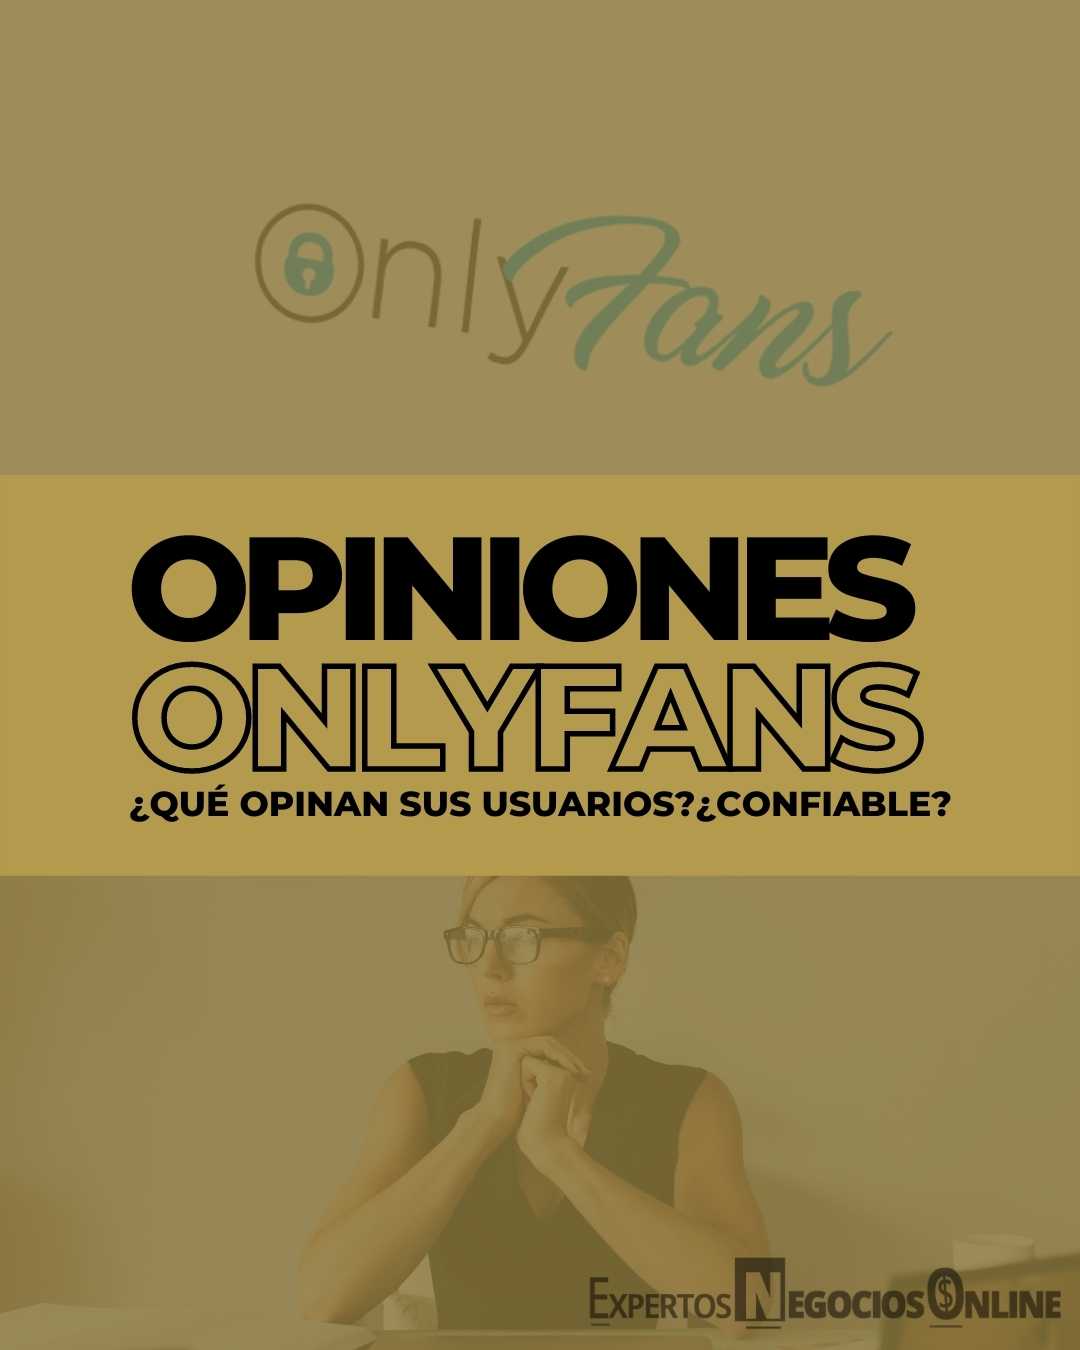 Opiniones Onlyfans - es confiable - qué opina la gente